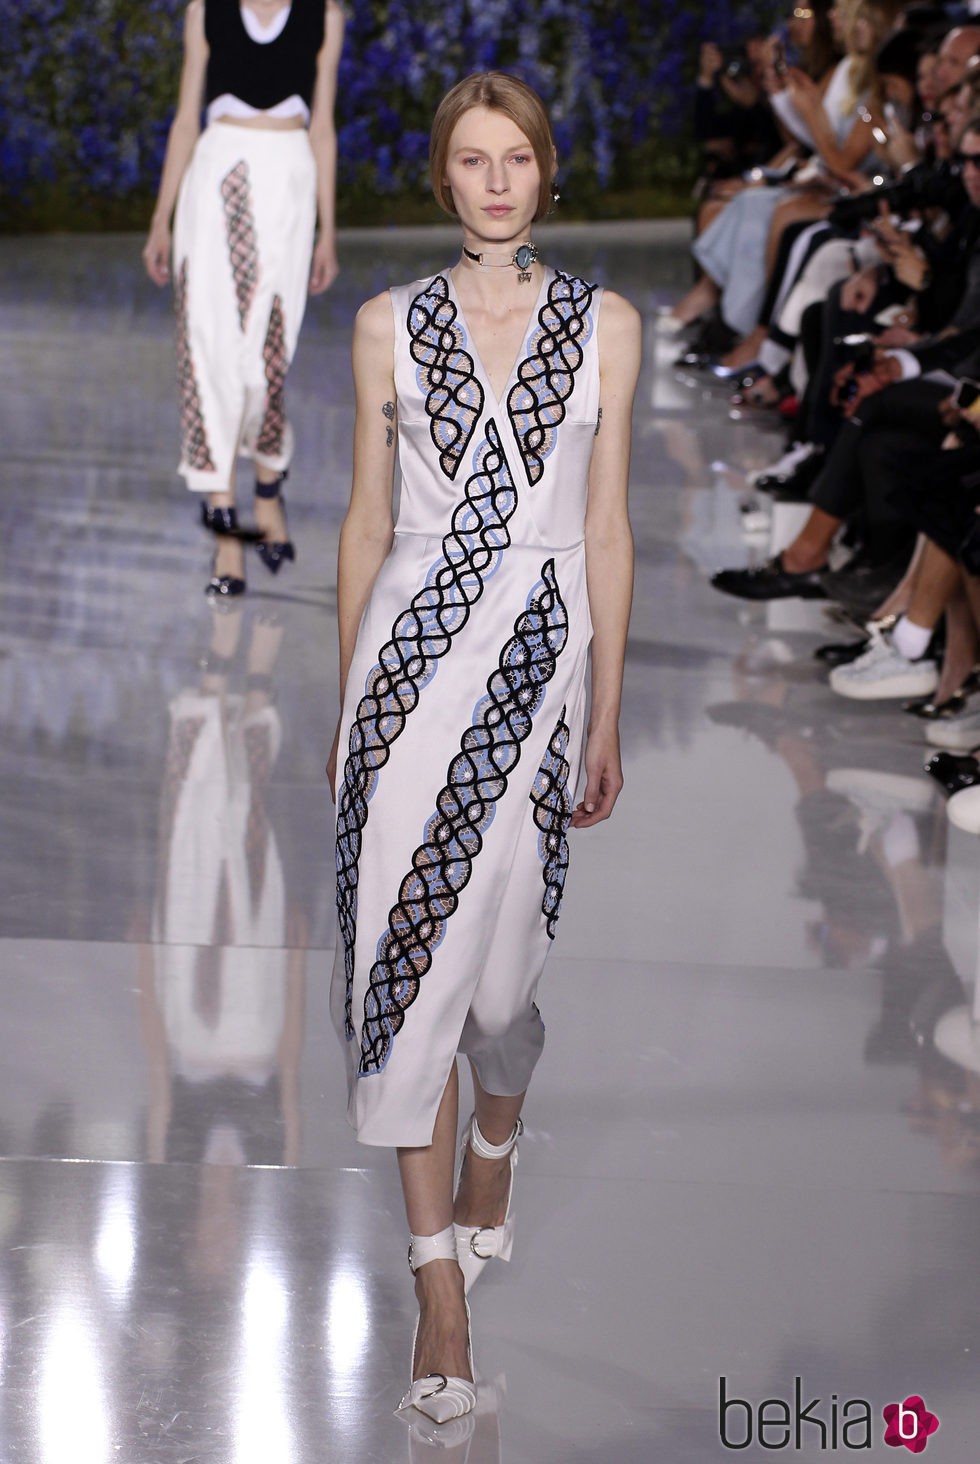 Vestido blanco con crochet de la colección primavera/verano 2016 de Dior en Paris Fashion Week